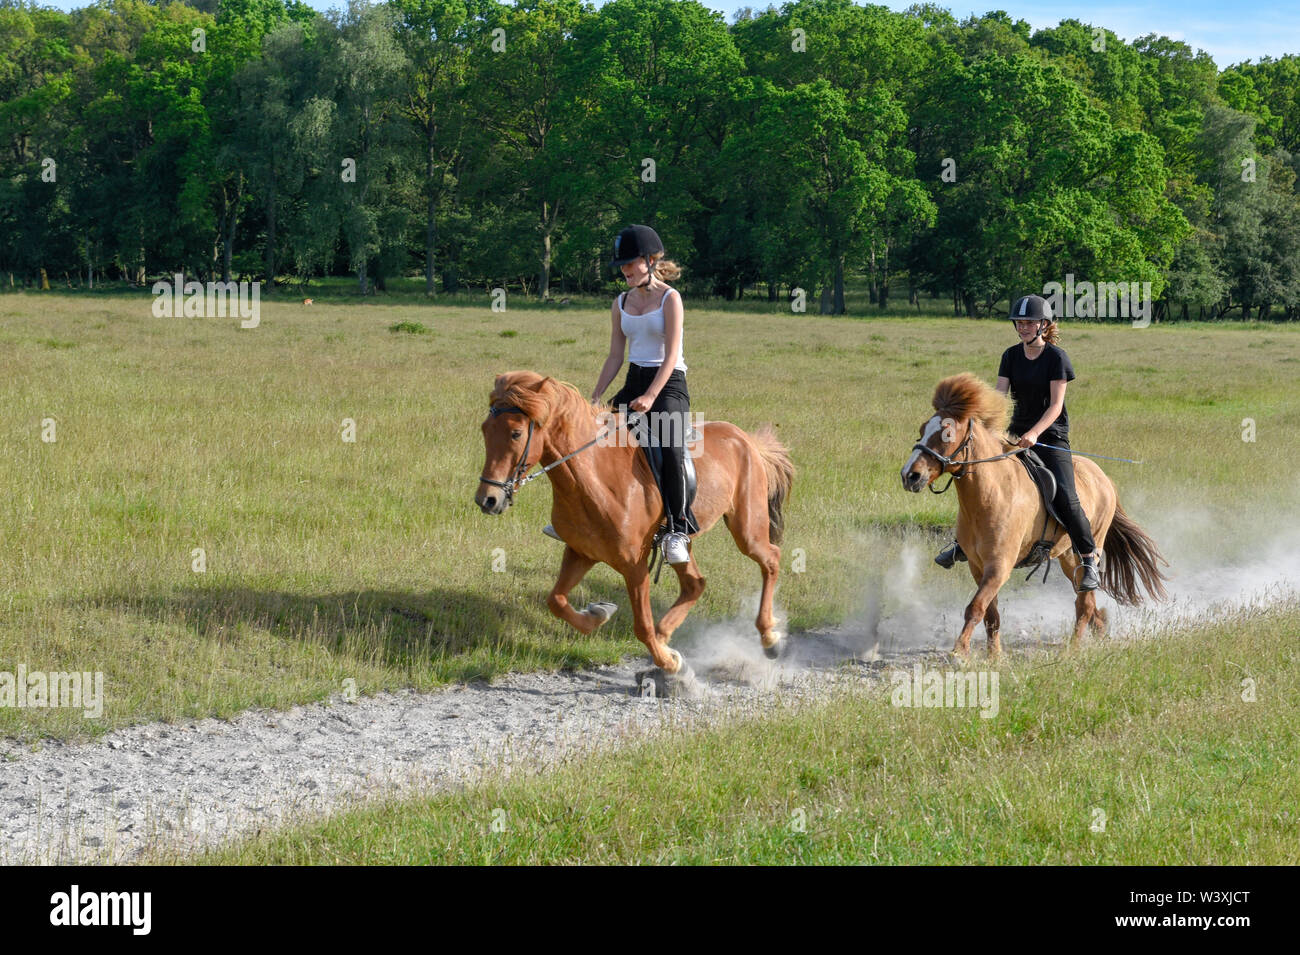 Danemark Copenhague - 24 juin 2019 : deux jeunes filles à cheval chevaux galopant sur un parc naturel de Copenhague au Danemark Banque D'Images